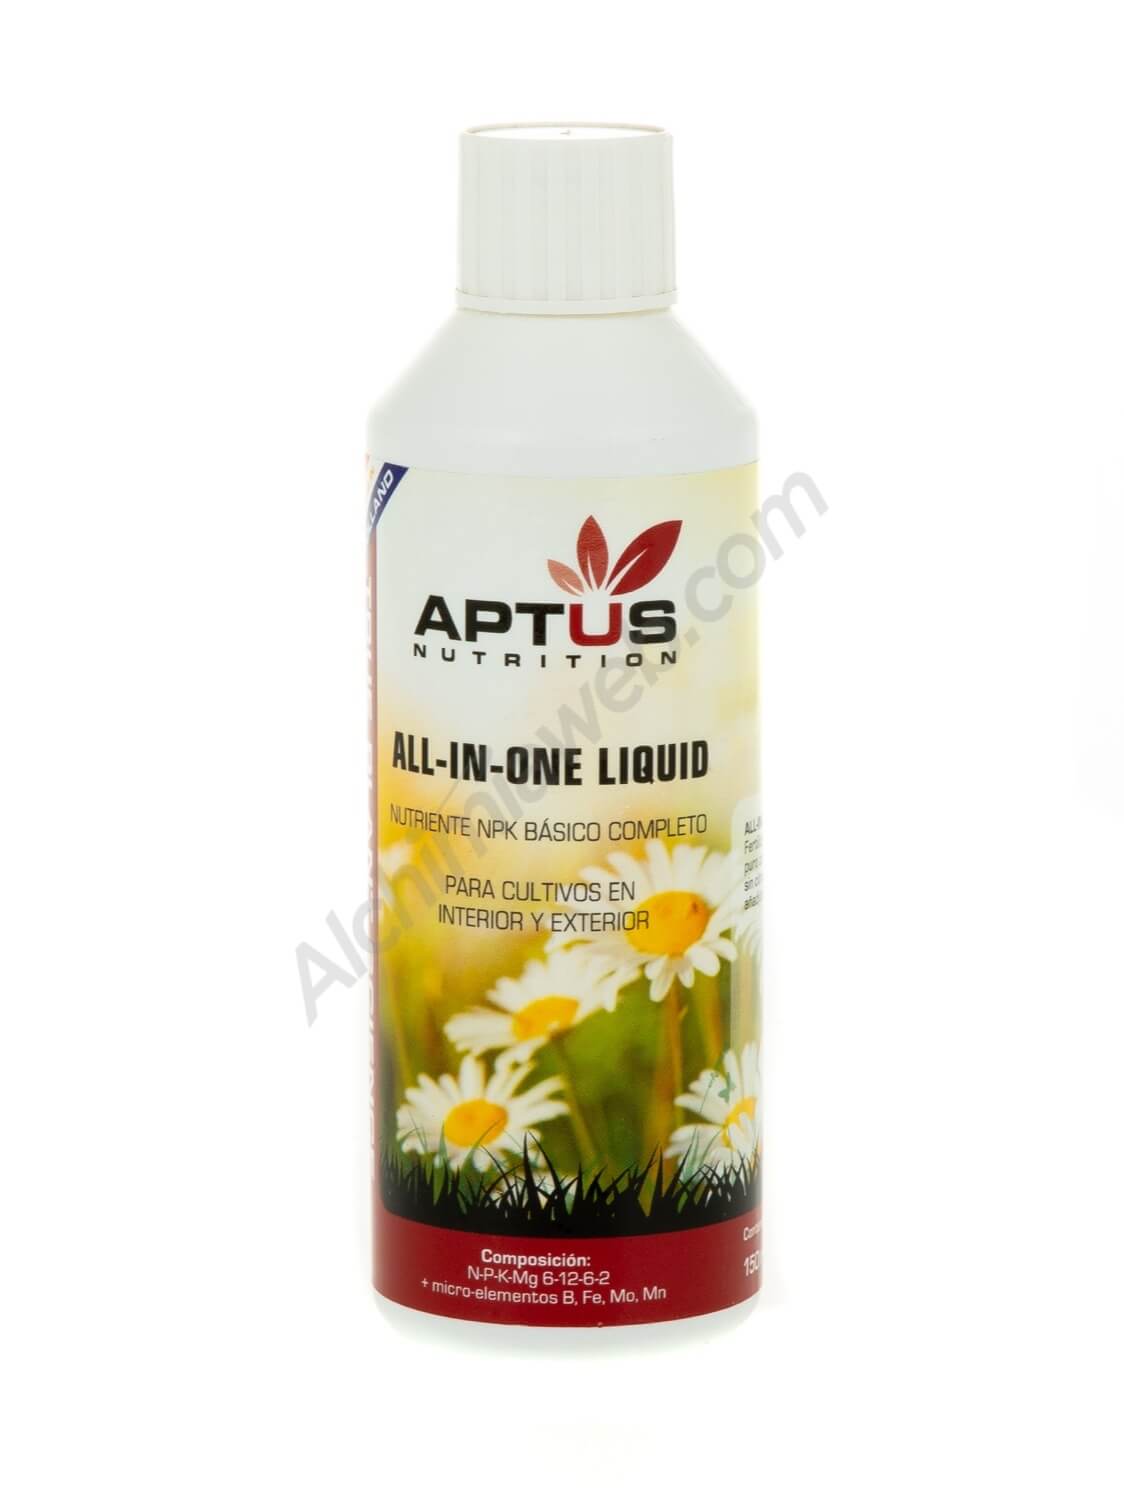 Vente de Aptus All in One Liquid